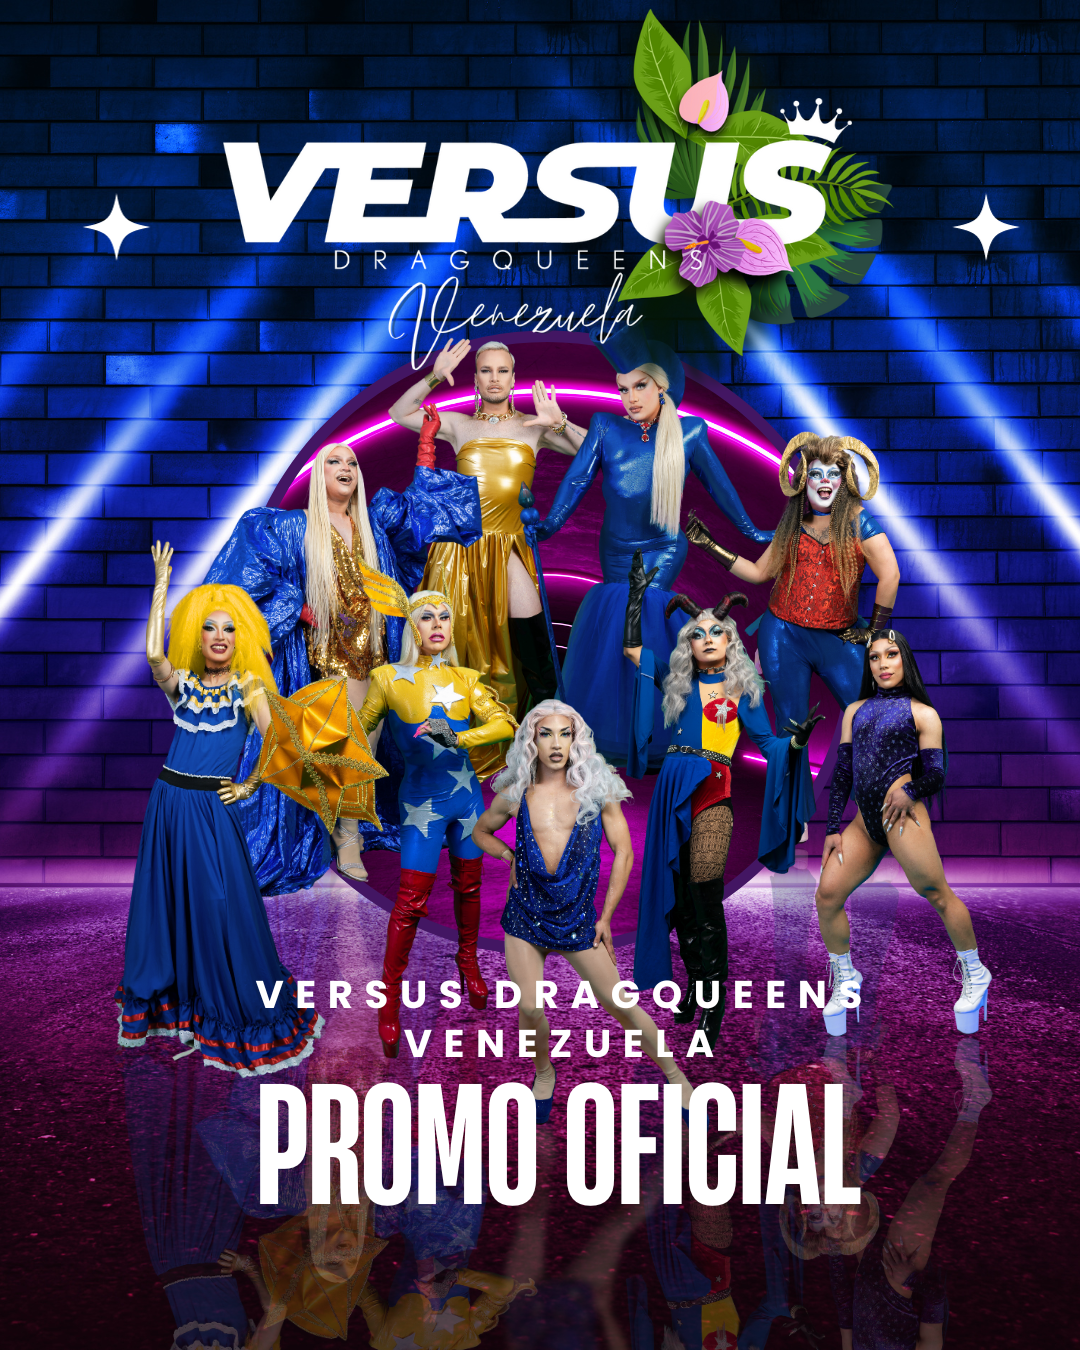 Promo Versus Dragqueens Venezuela